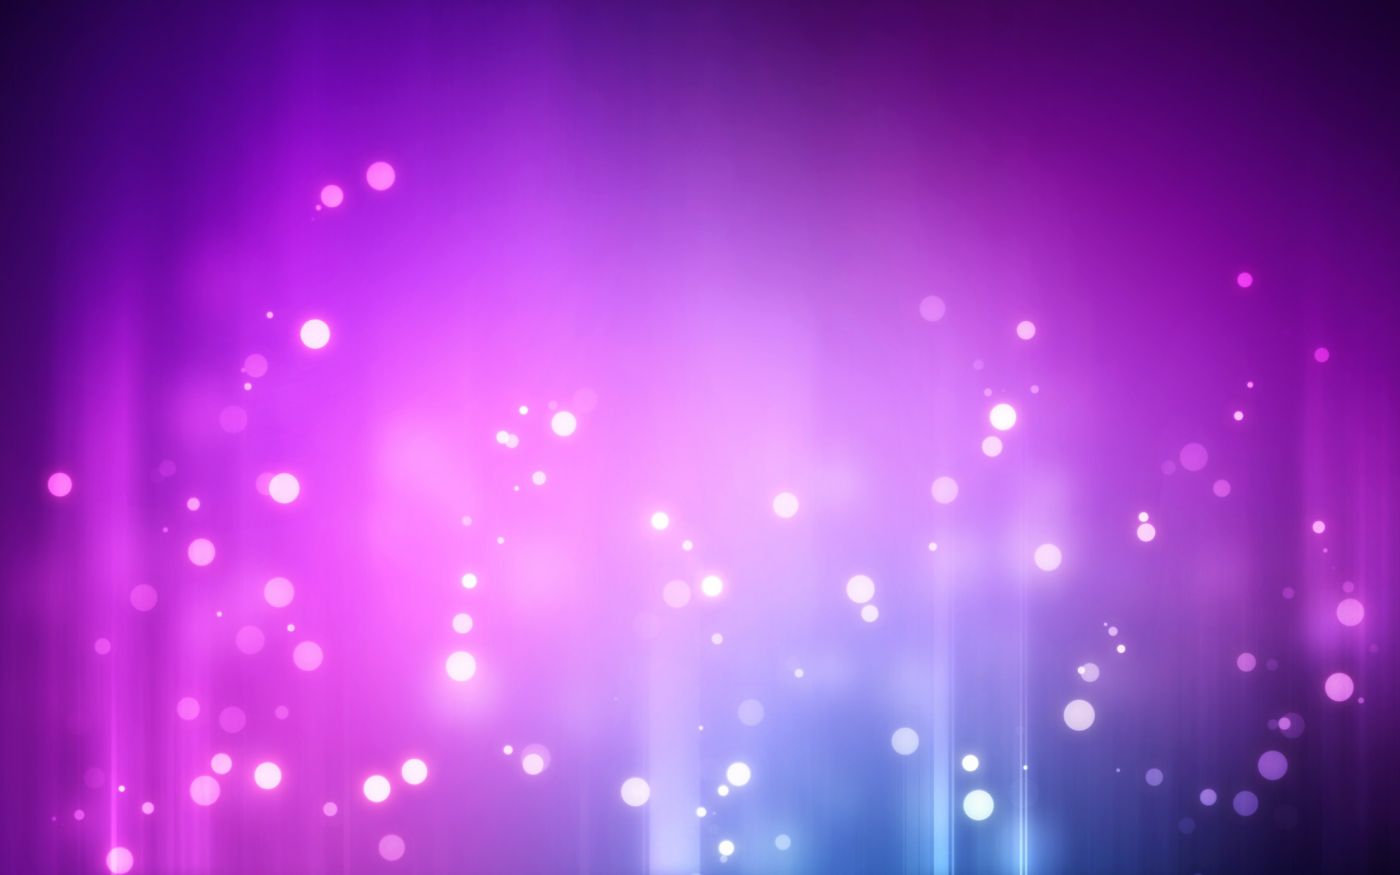 高清晰紫蓝星光光束壁纸 欧莱凯设计网 08php Com